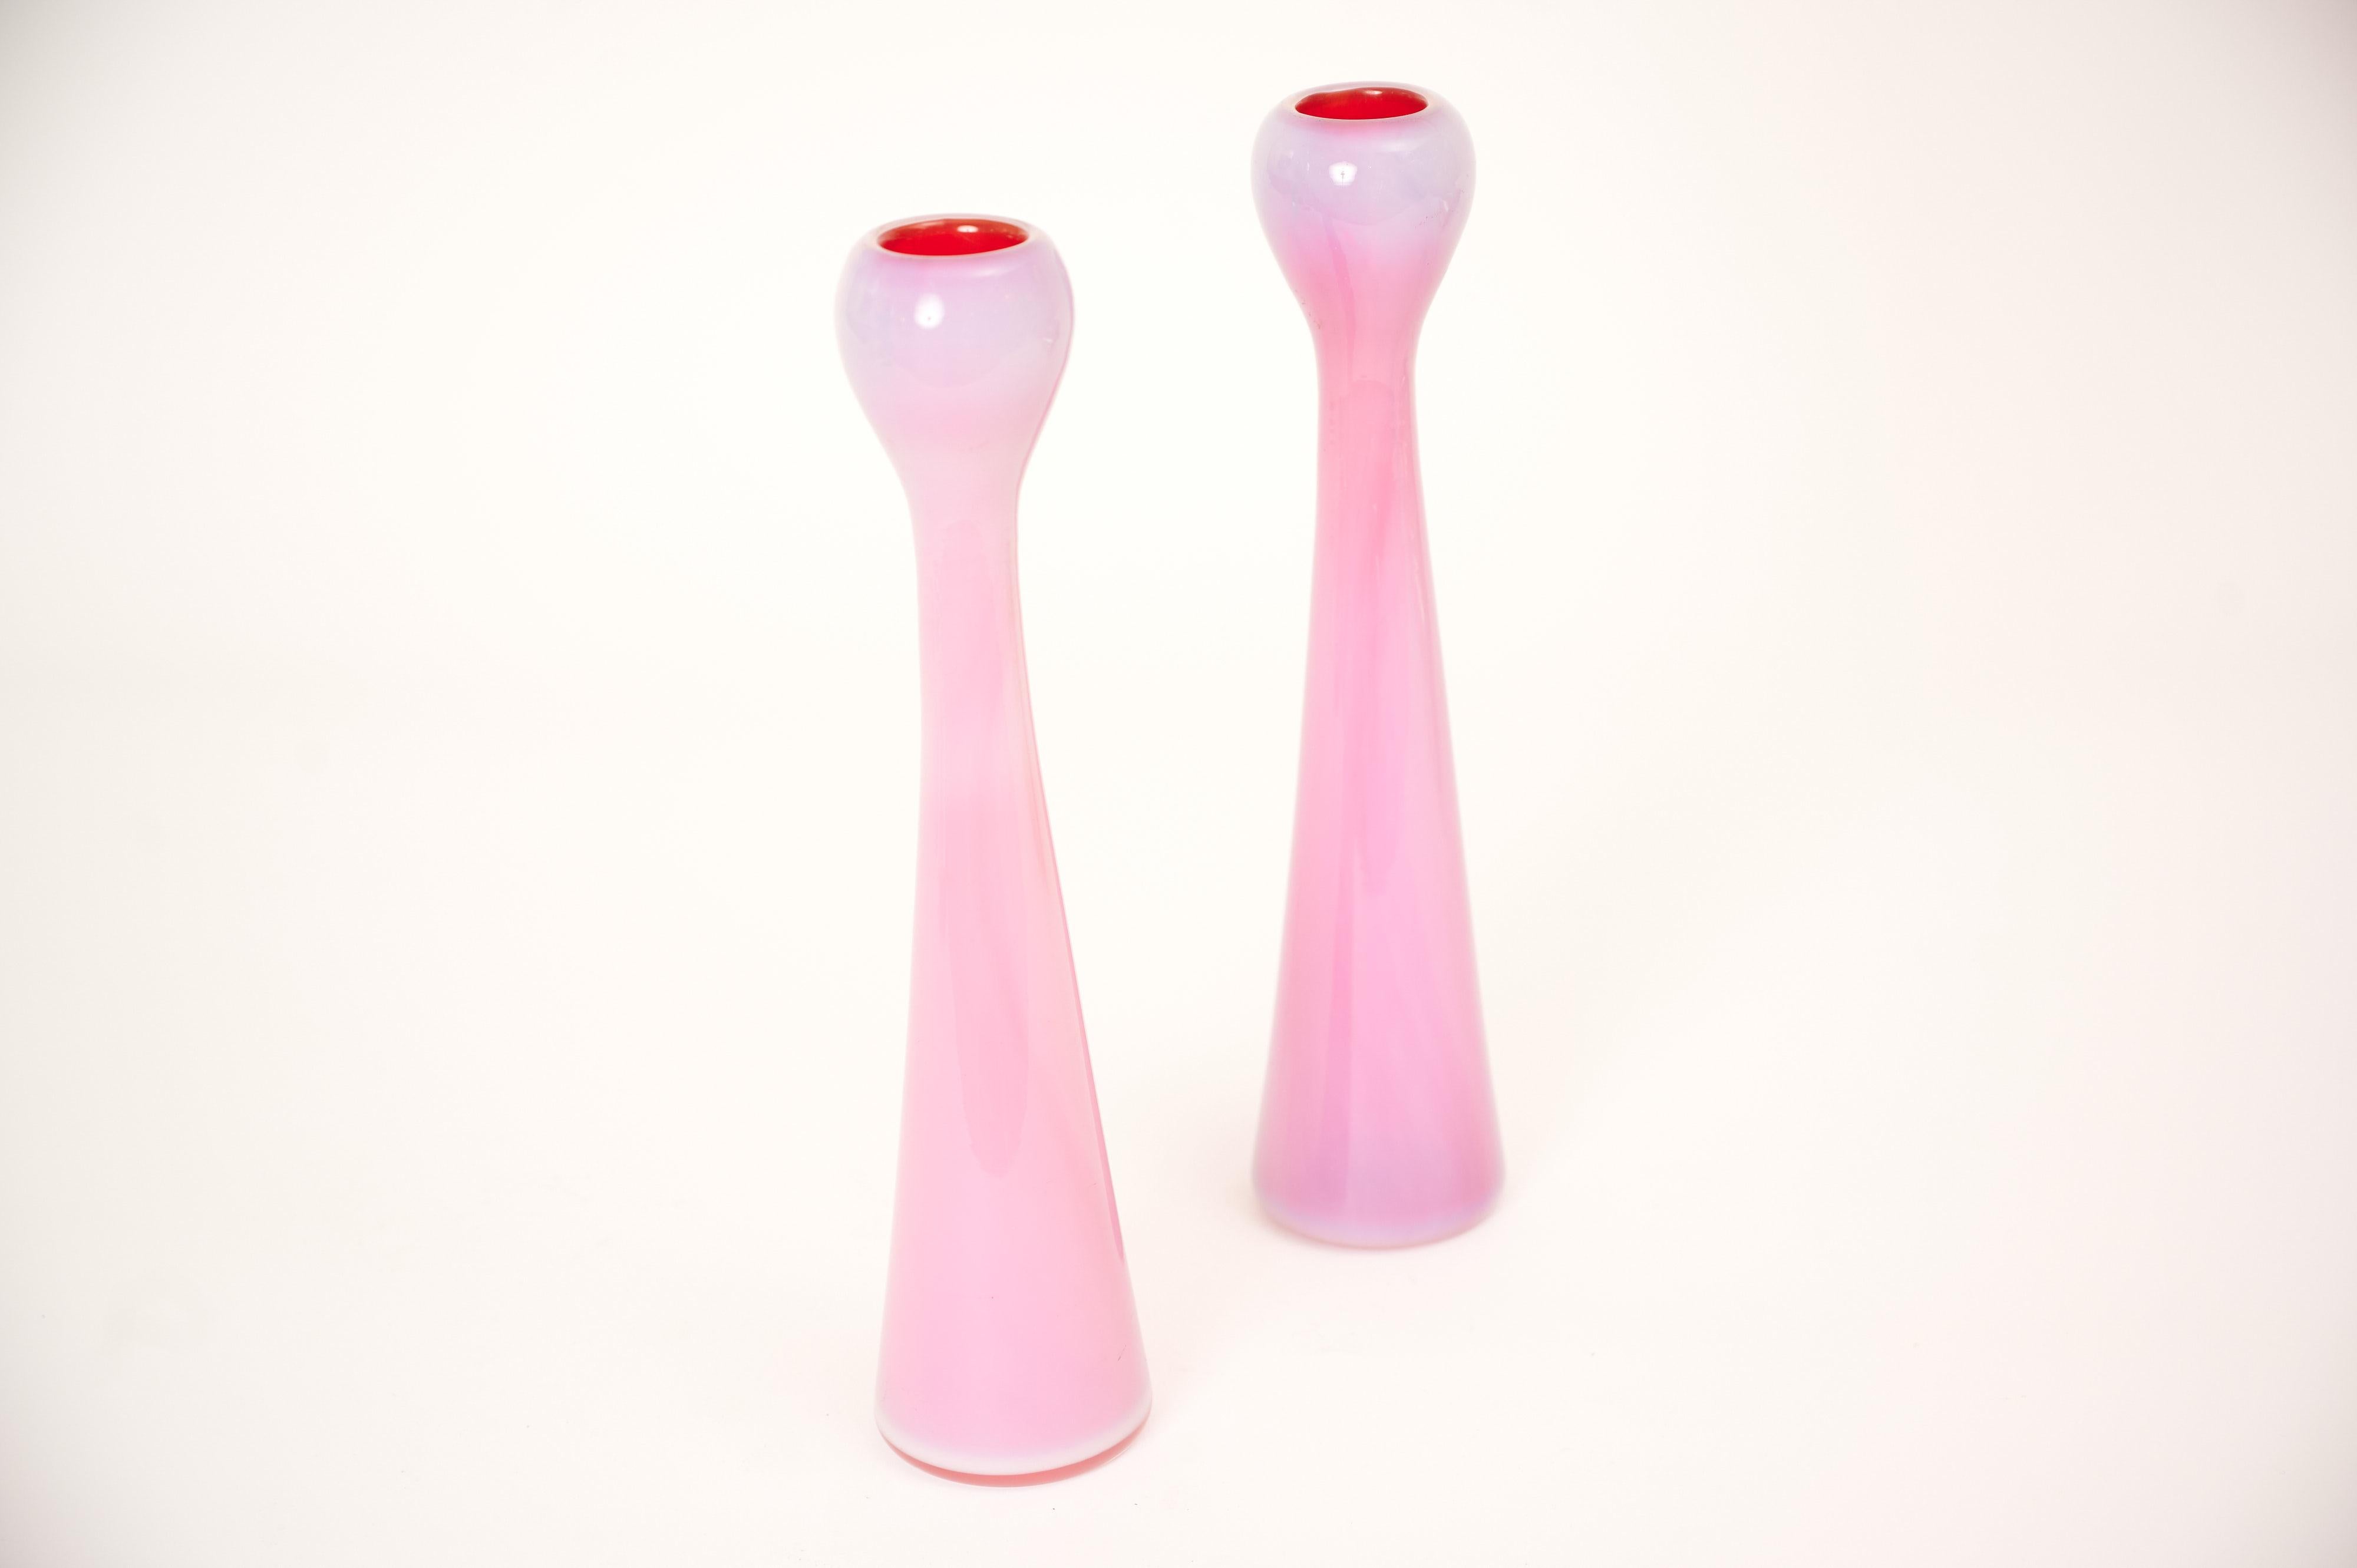 Une paire d'élégants chandeliers rose laiteux/blanc avec un centre contrastant presque rouge

Produit à Murano dans les années 1960 par Barovier & Toso. 

L'étiquette originale est présente. (Voir les images).